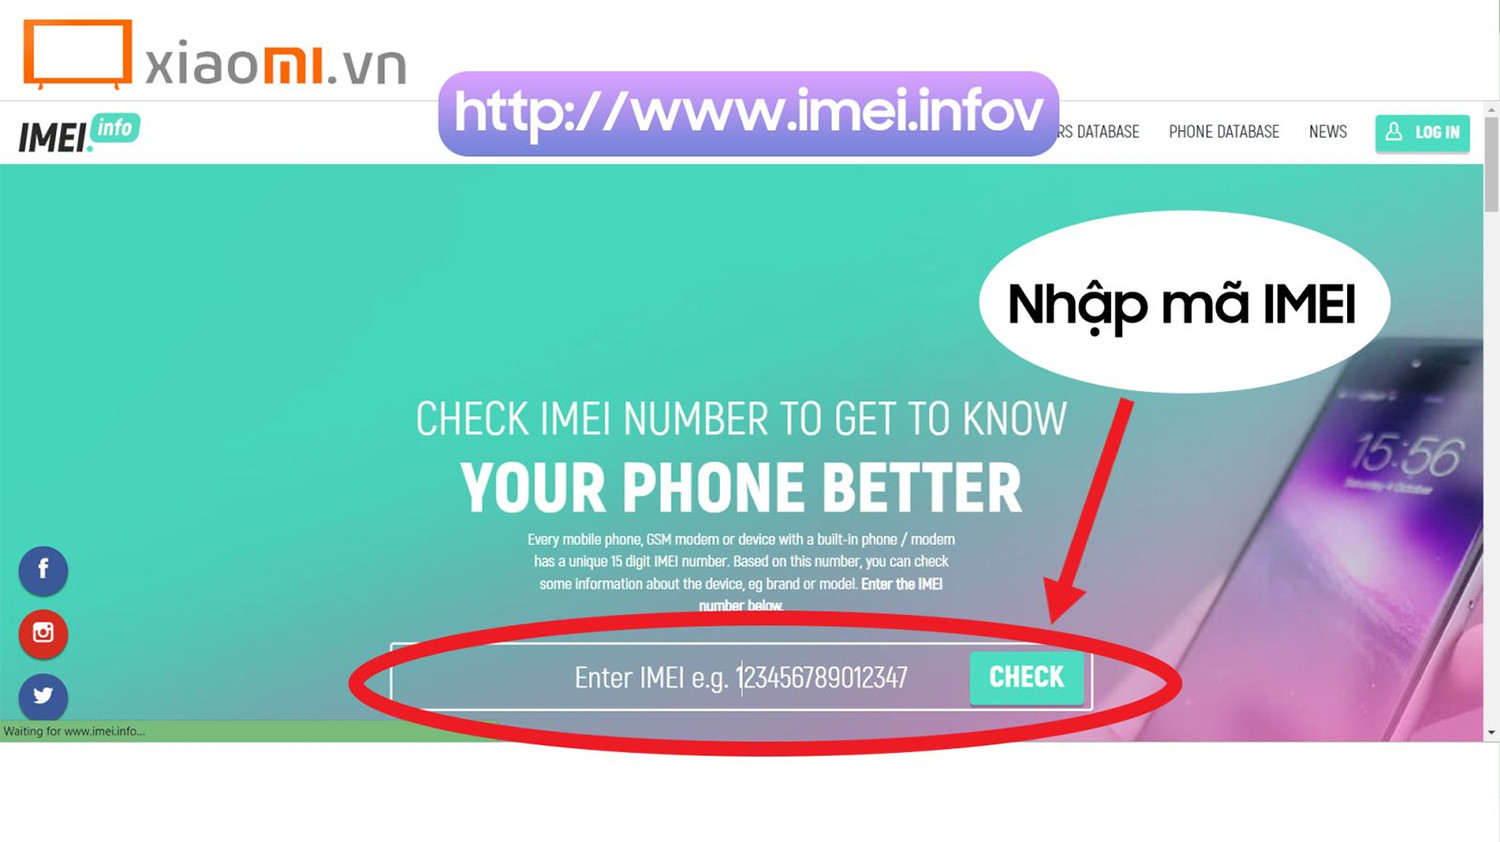 Bạn chỉ cần nhập mã IMEI vào khung Check và chọn Check để kiểm tra